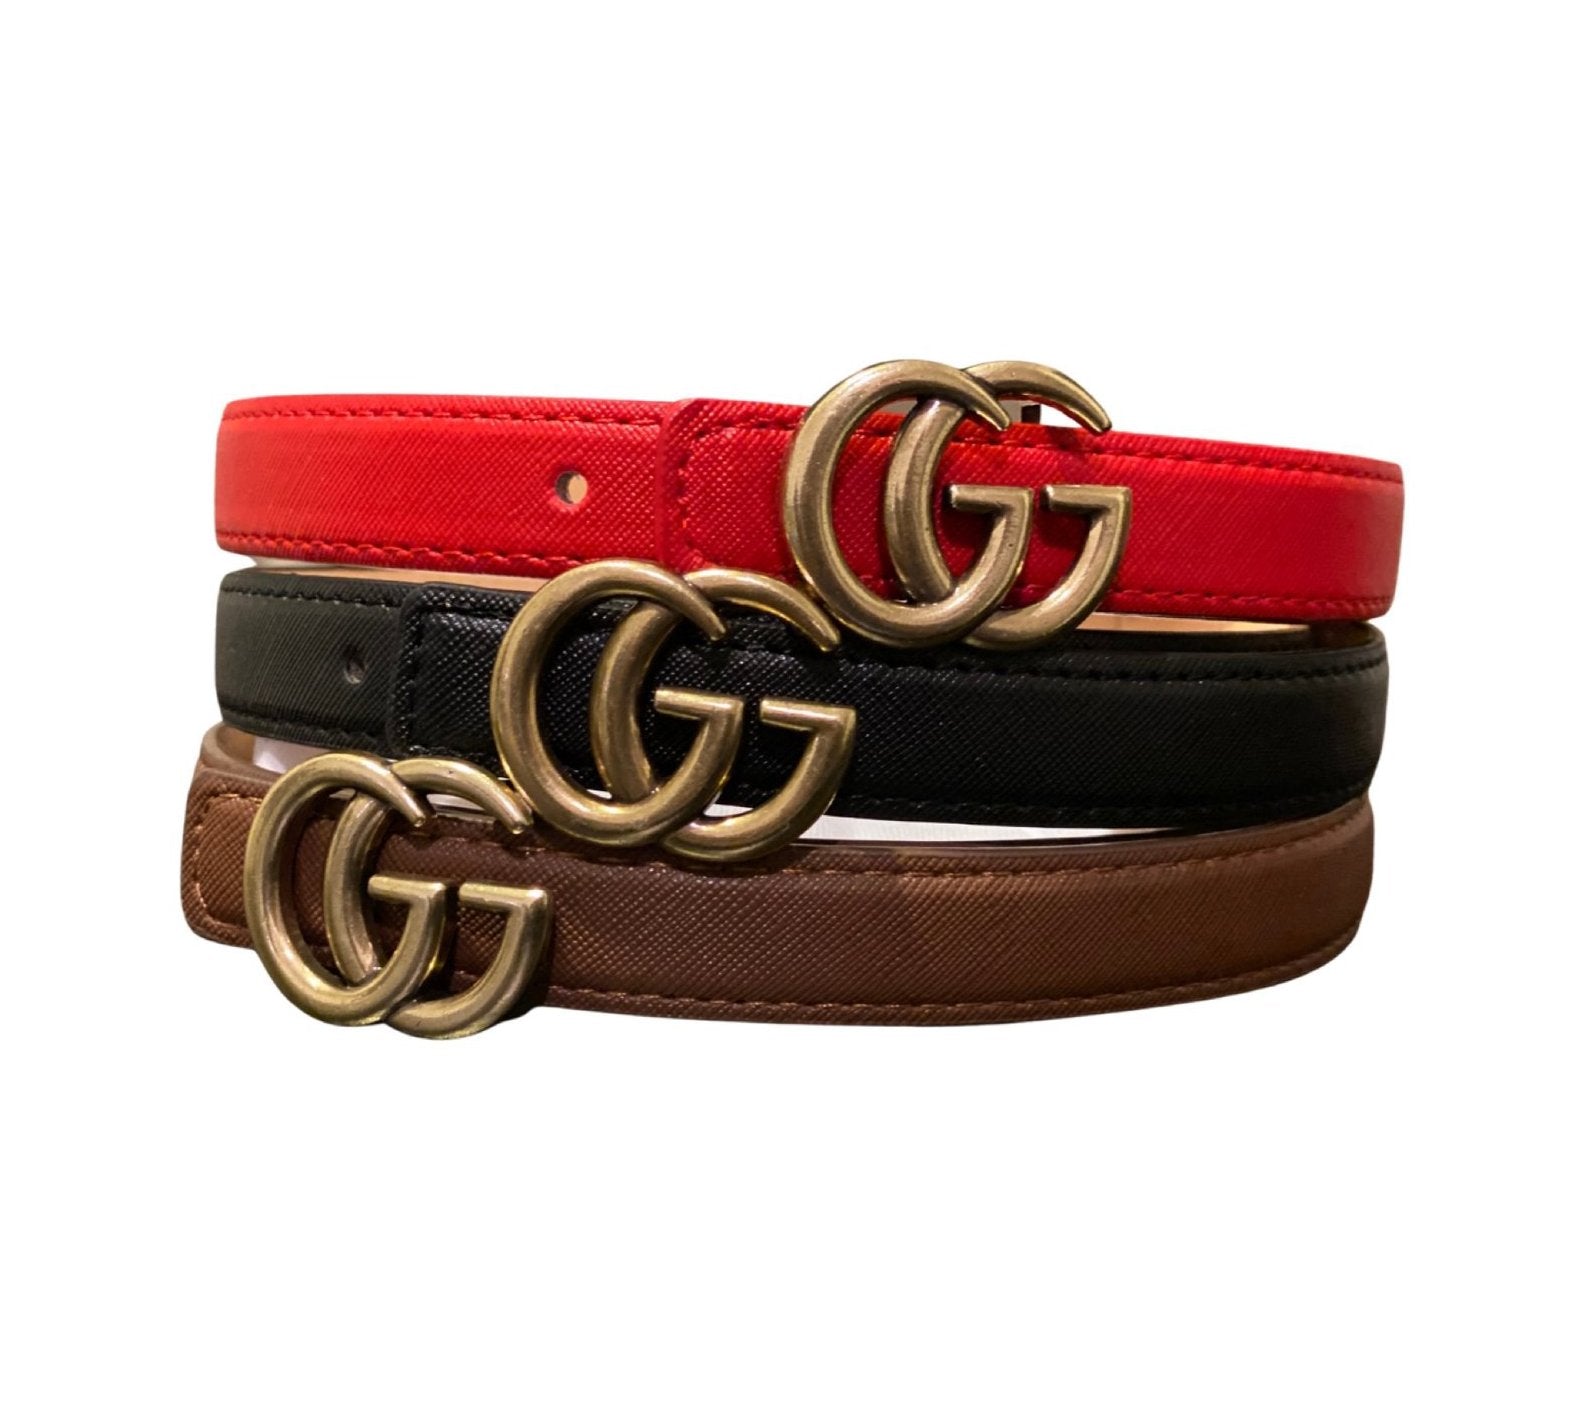 GG Belt Red